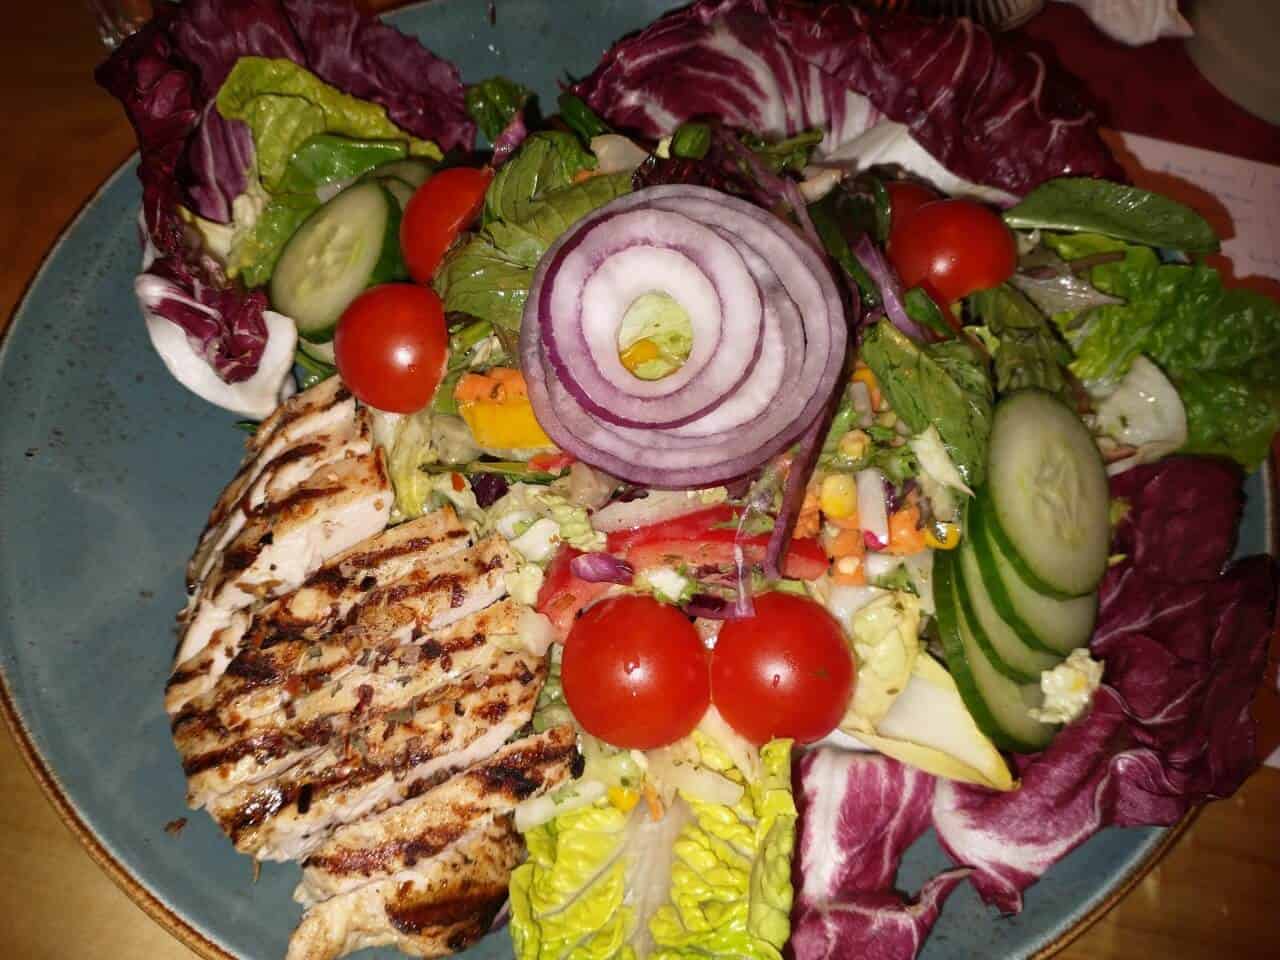 Harzer Schnitzelkönig - Fresh Royal-Salat mit gegrillter Hähnchenbrust, appetitlich angerichtet auf großen, roten Salatblättern und verziert mit Gurkenscheiben, Tomatenstücken und Zwiebelringen